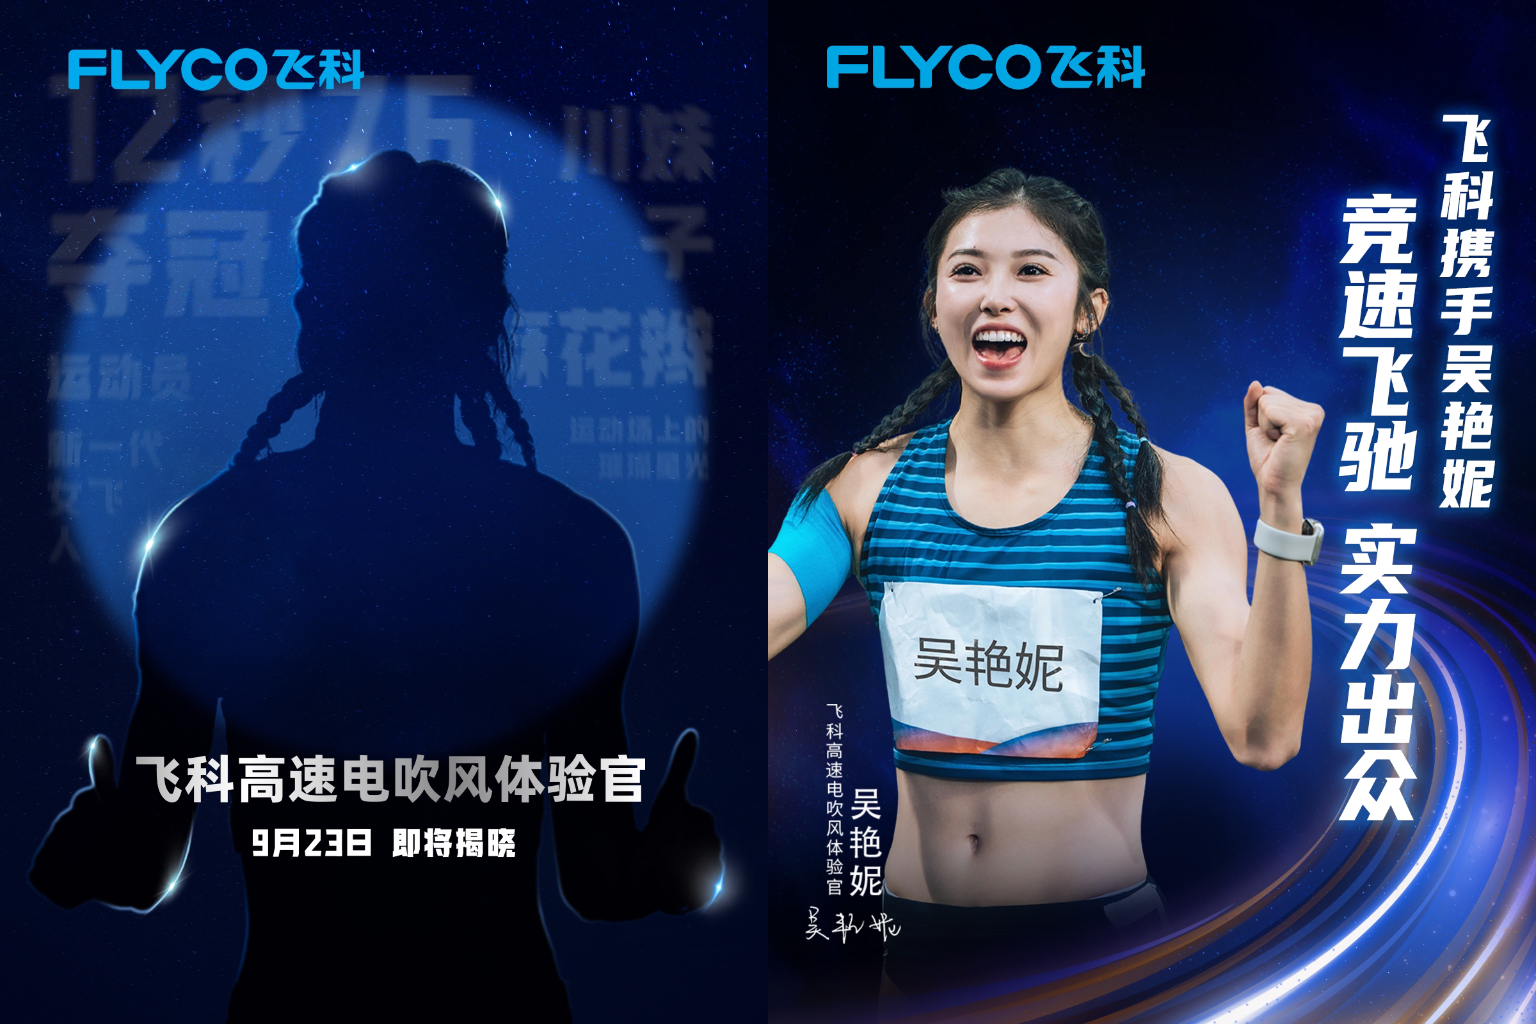 飞科官宣女子100米栏运动员吴艳妮 出众实力 共创新高